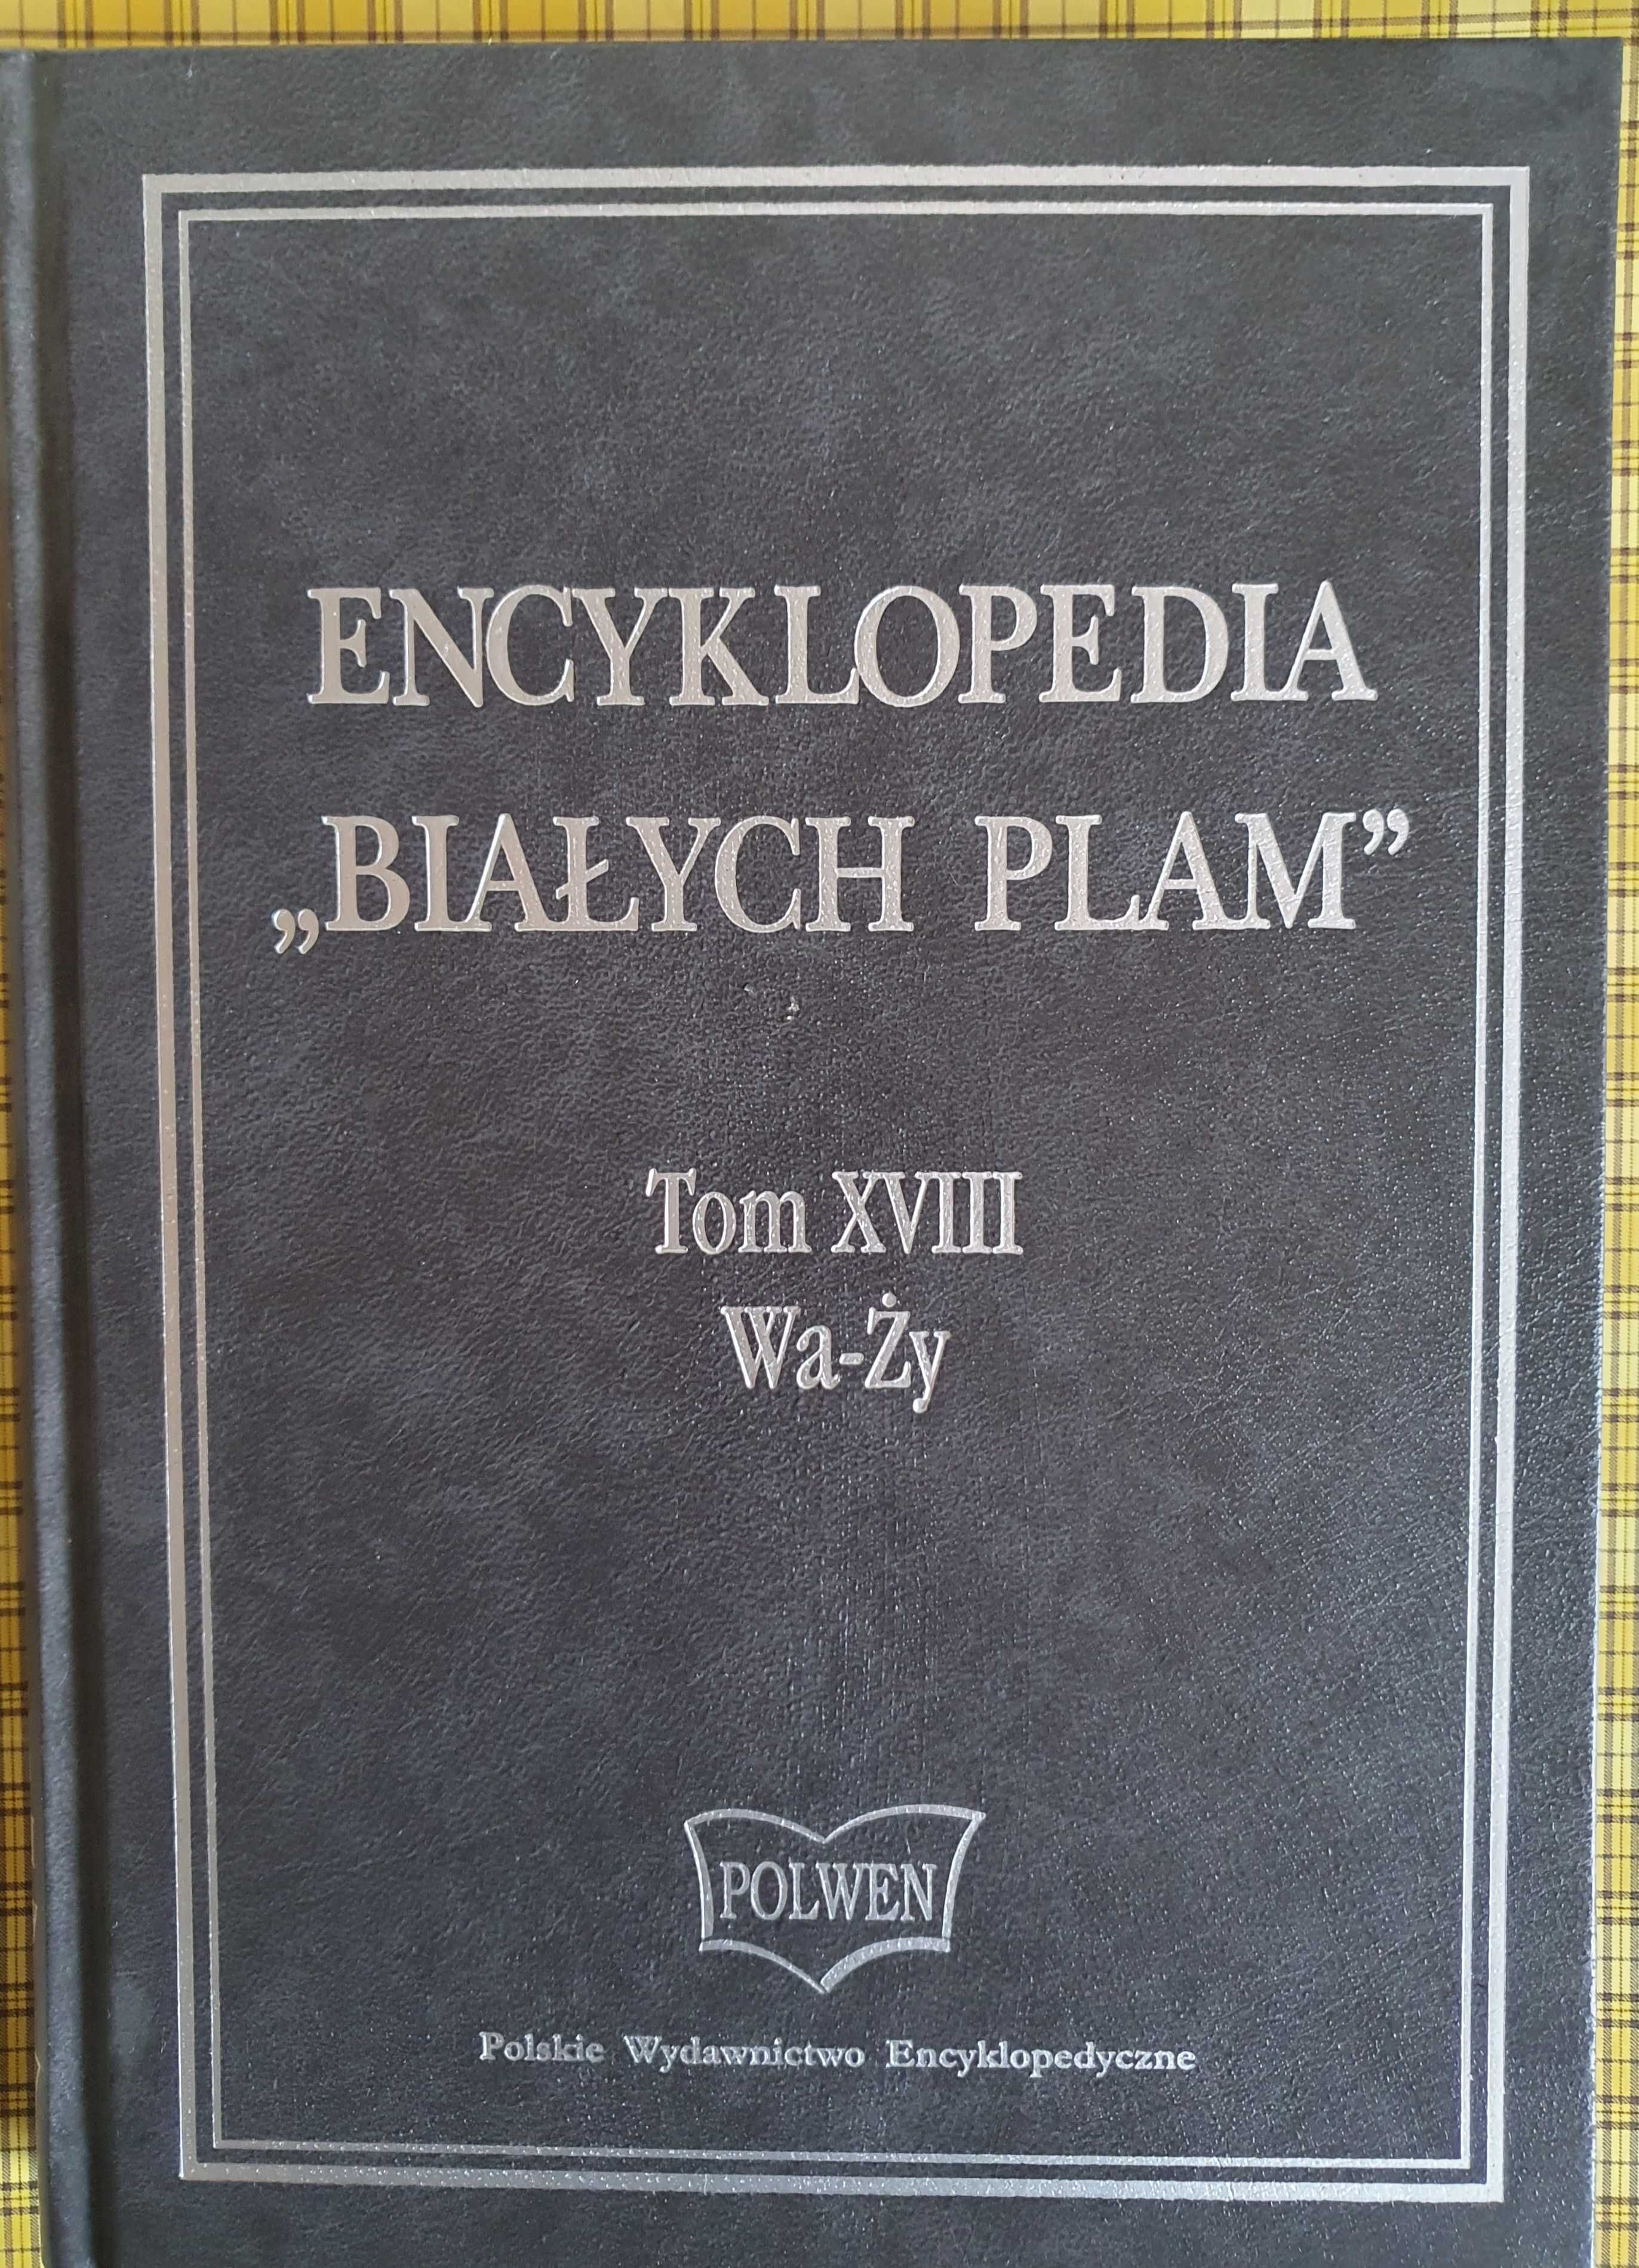 Encyklopedia "Białych plam" komplet  20 tomów !